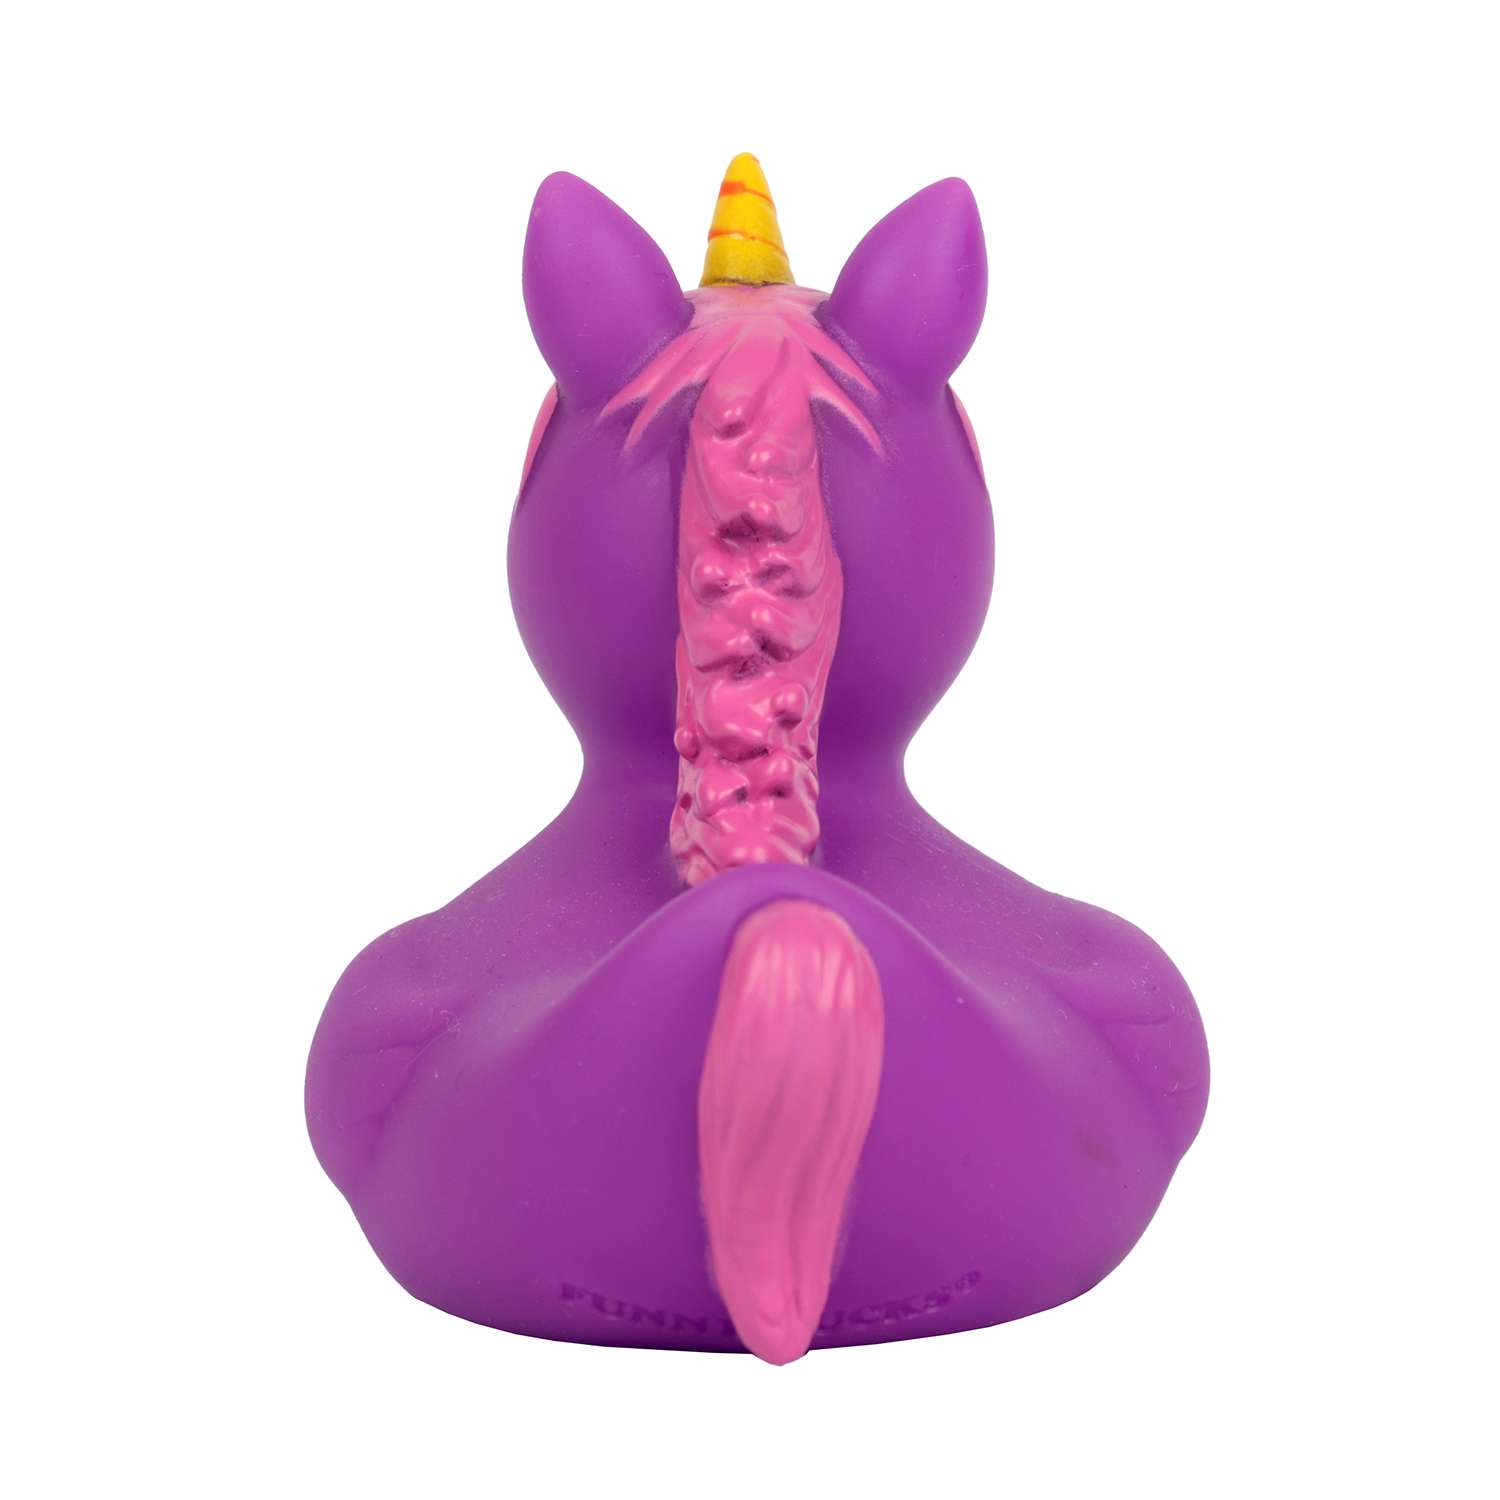 Игрушка для ванны сувенир Funny ducks Единорог пурпурный уточка 2090 - фото 5